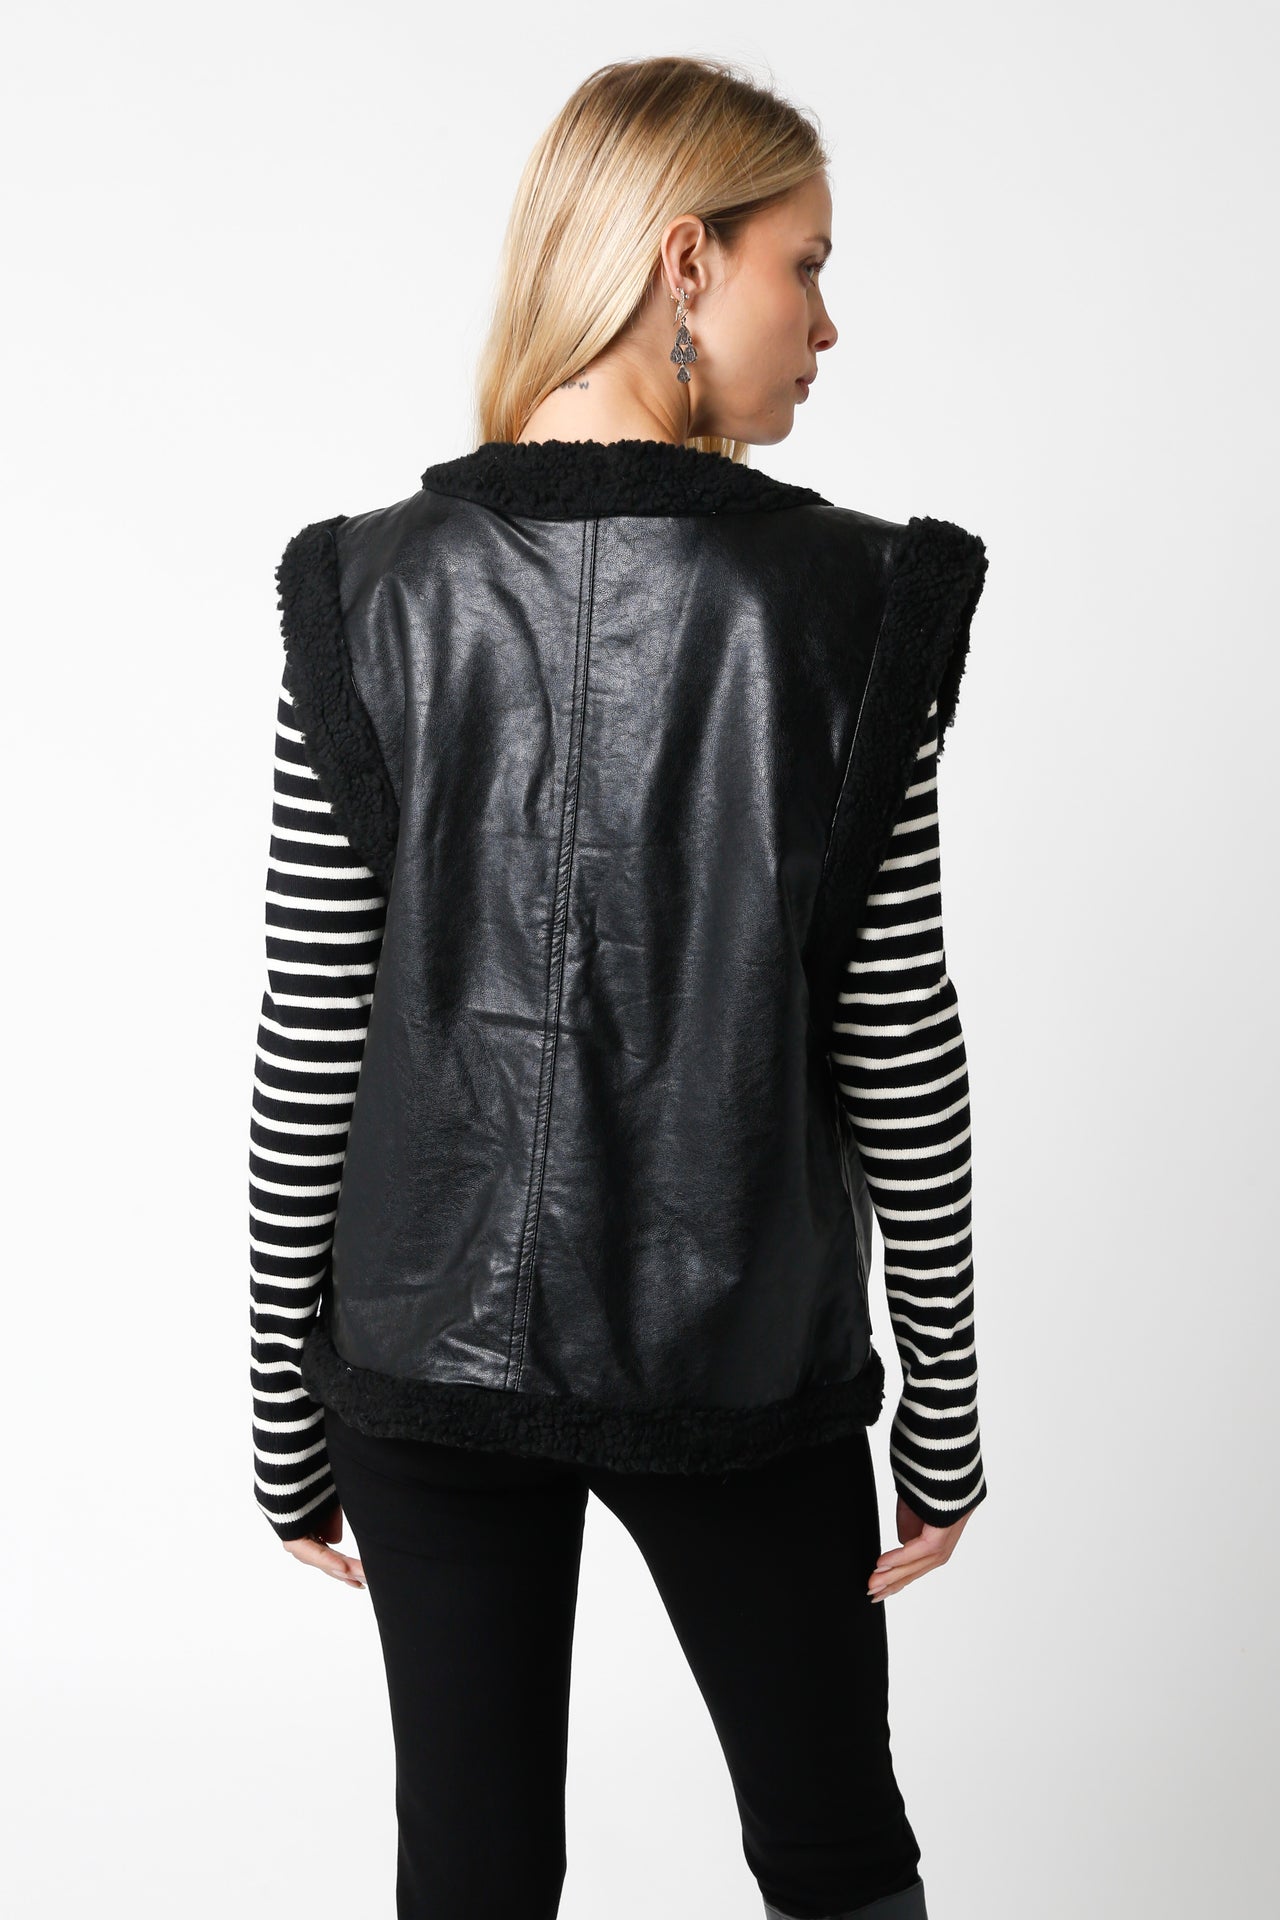 Crisp Sunday Vest Black, Jacket by Olivaceous | LIT Boutique